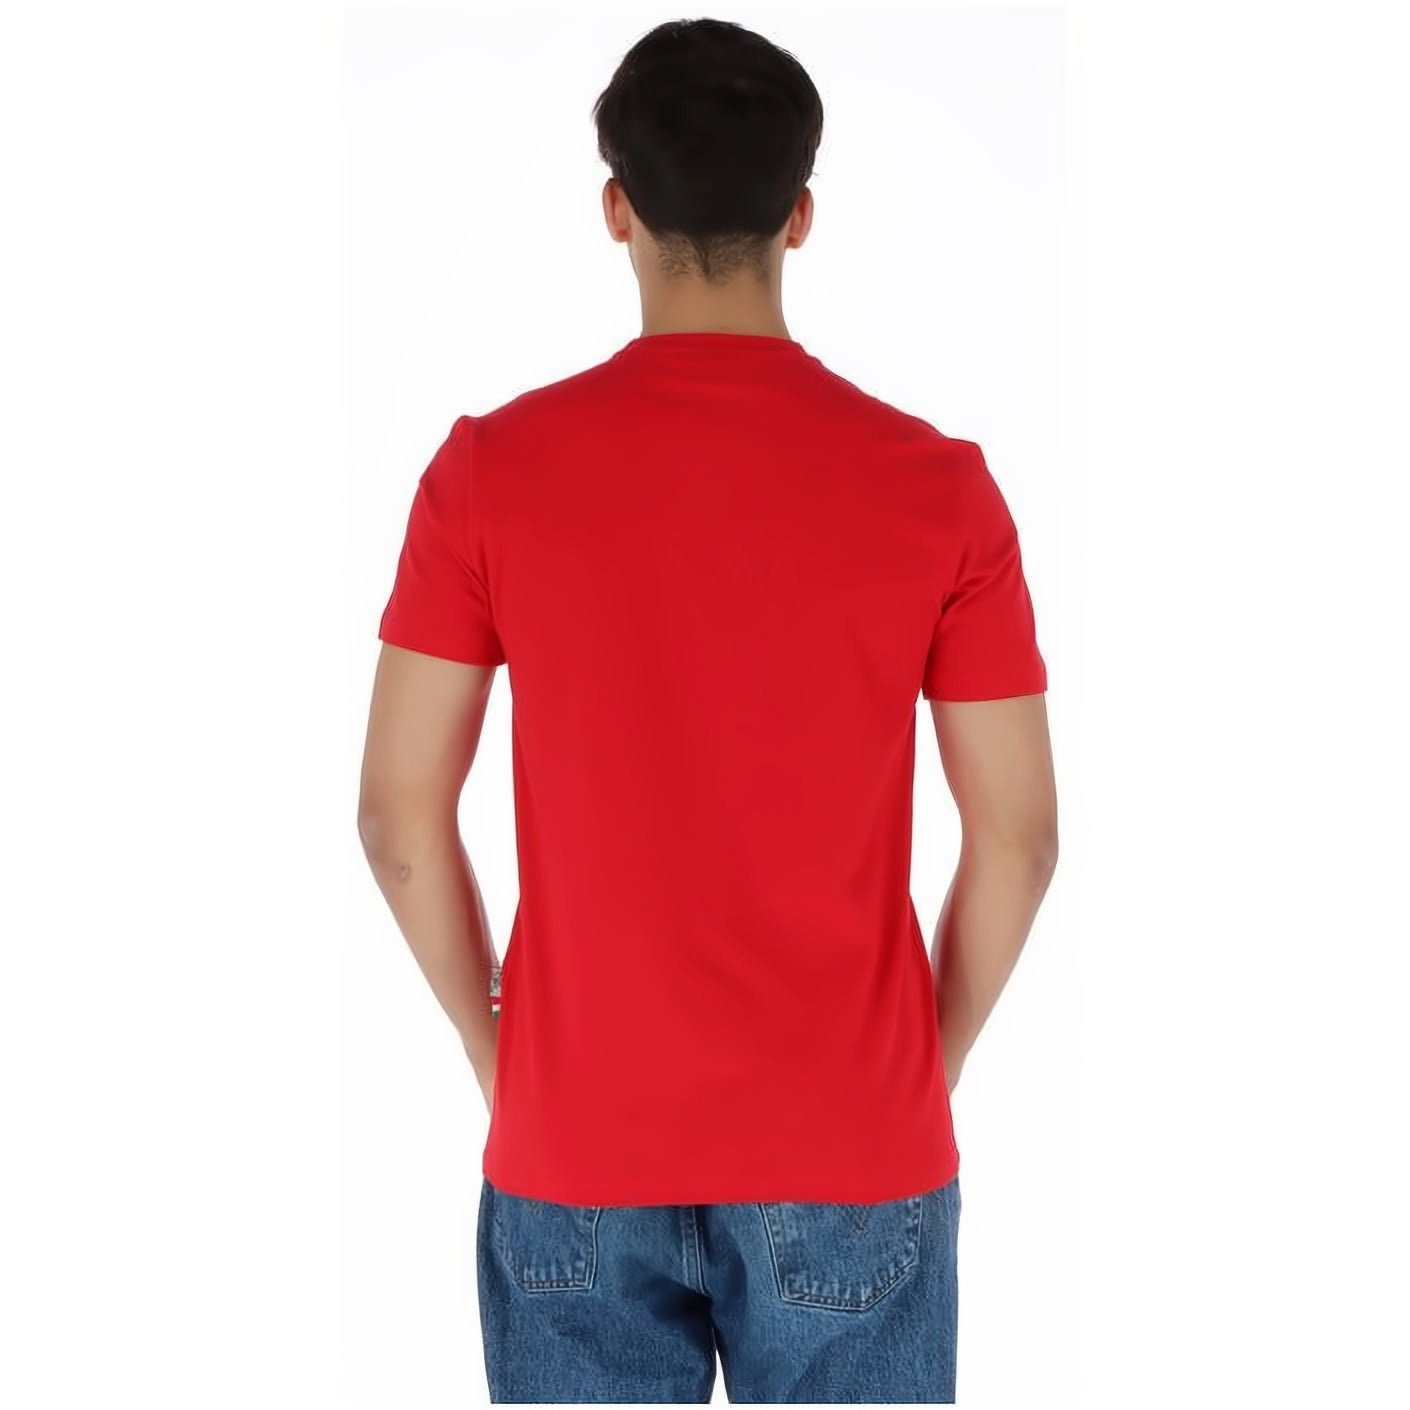 Tragekomfort, Farbauswahl vielfältige NECK T-Shirt SPORT ROUND Look, hoher Stylischer PLEIN